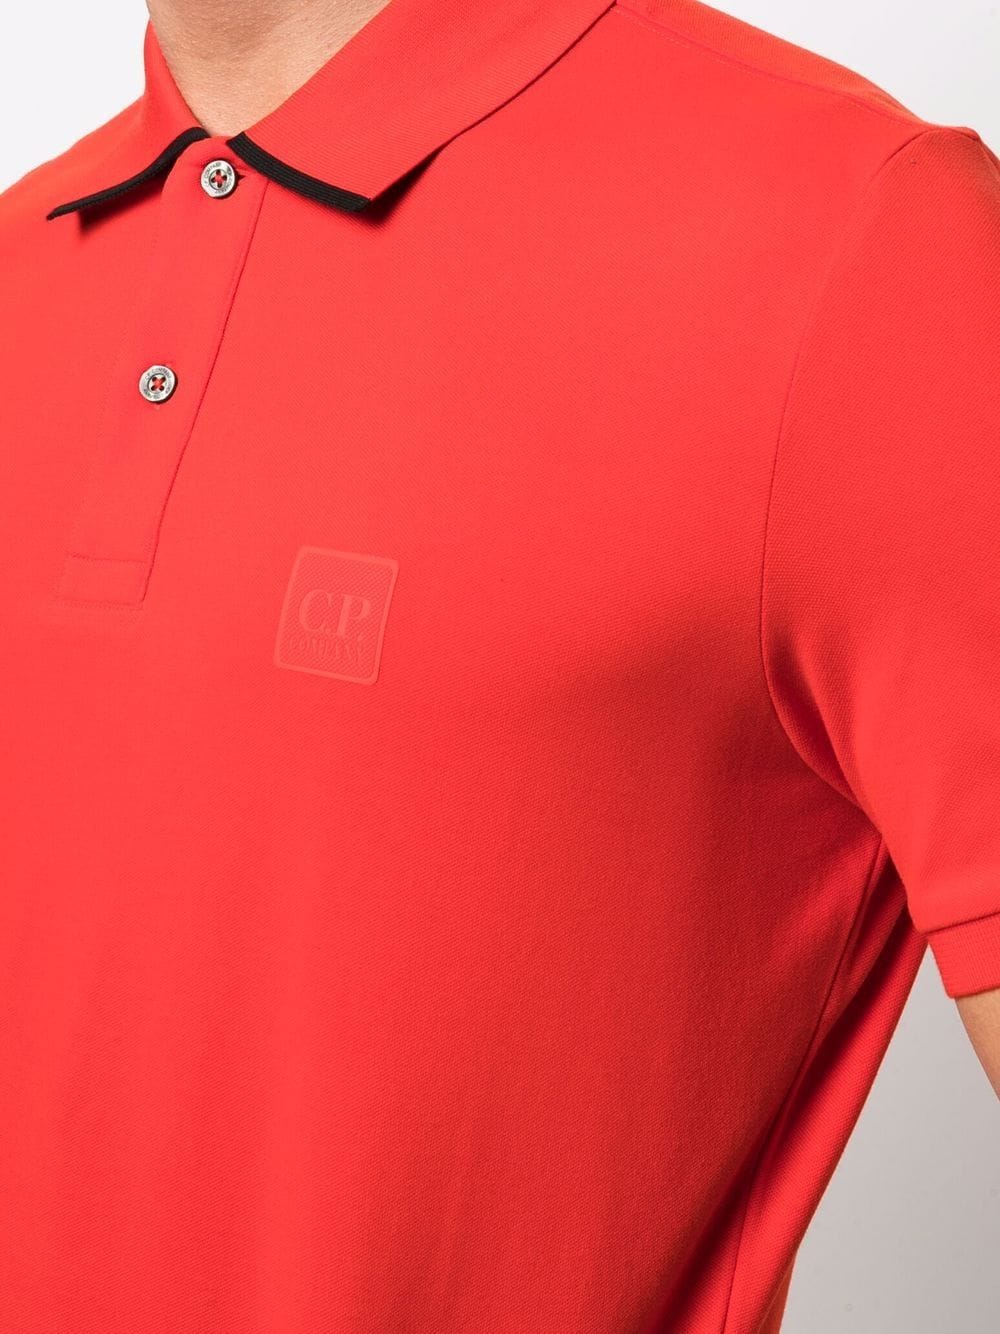 C.P. COMPANY Logo Patch Polo Shirt Red - MAISONDEFASHION.COM